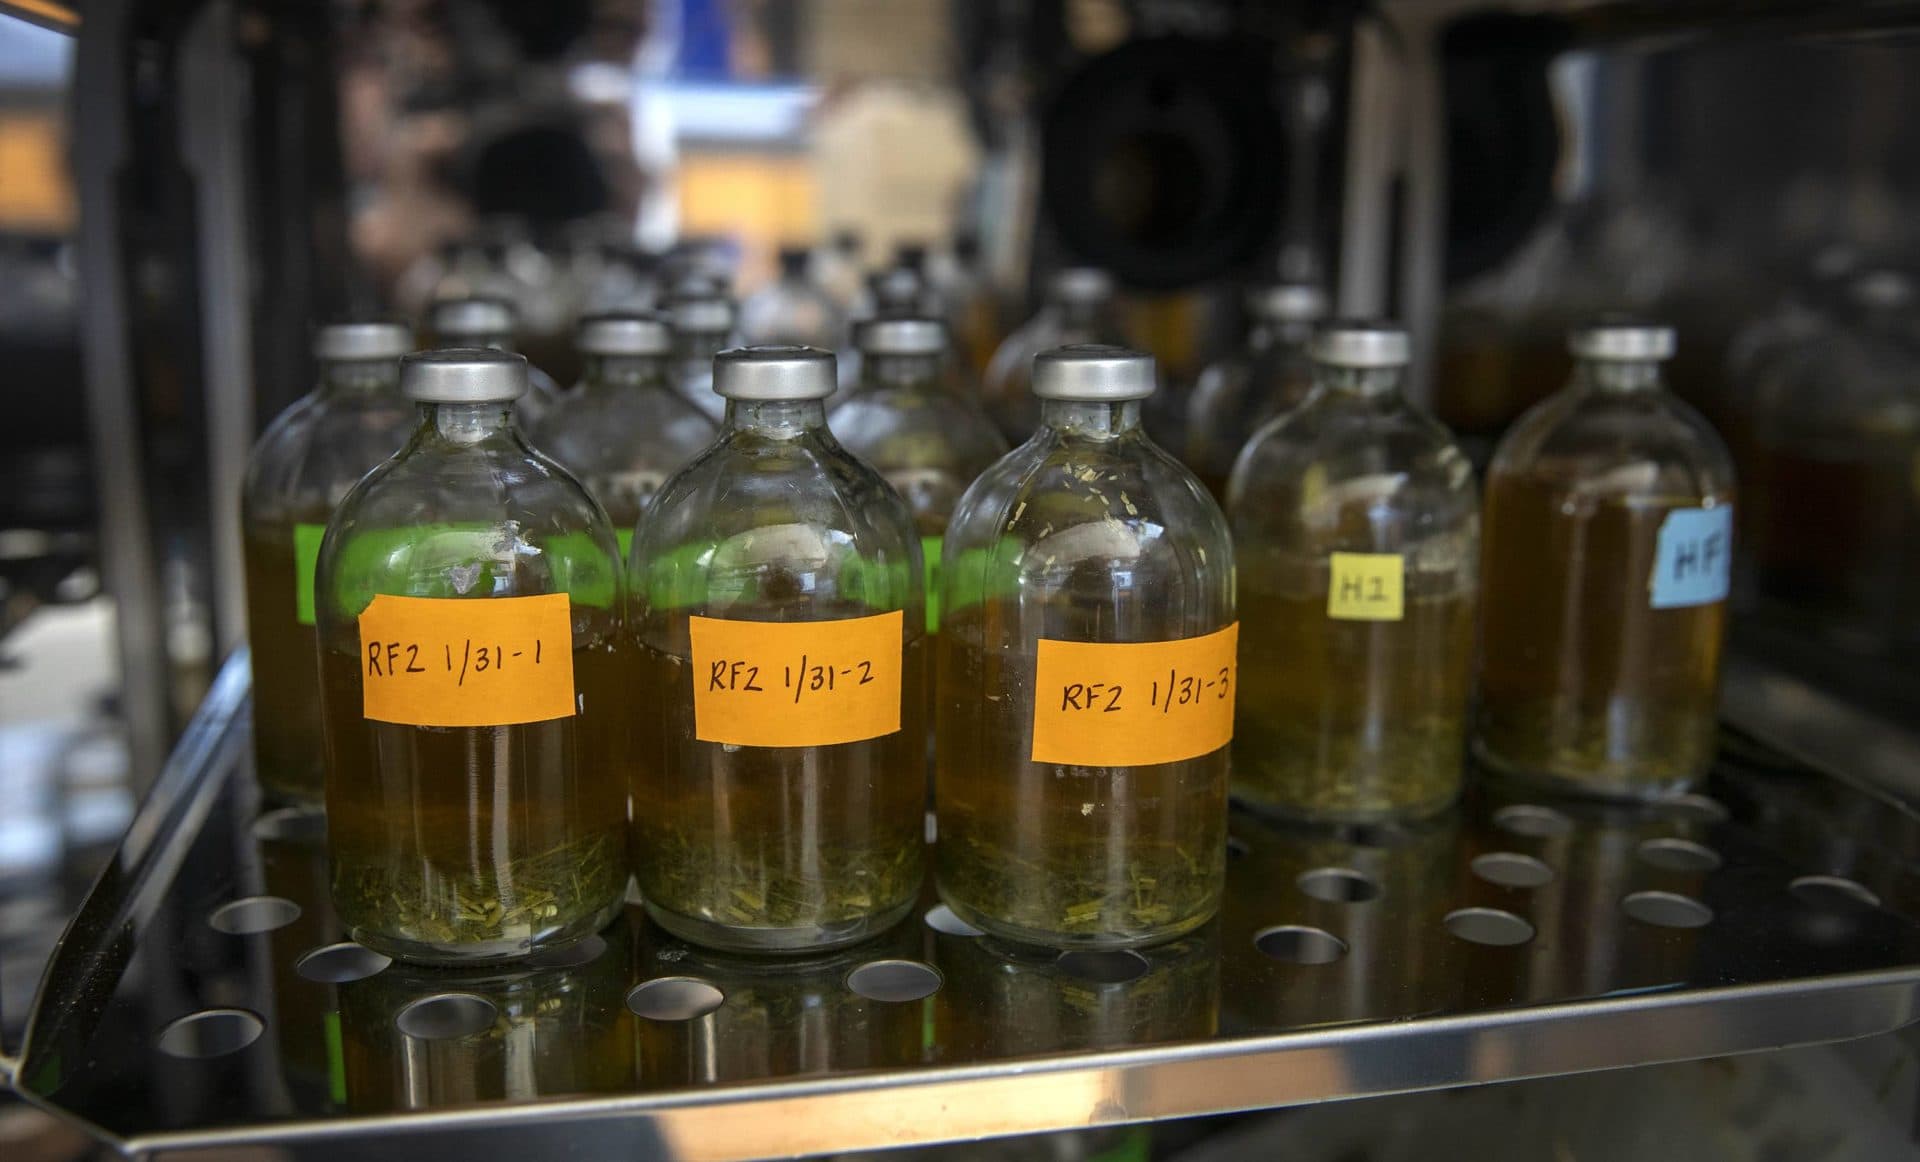 Cow rumen sample bottles in an incubator at Bigelow Laboratory. (Robin Lubbock/WBUR)